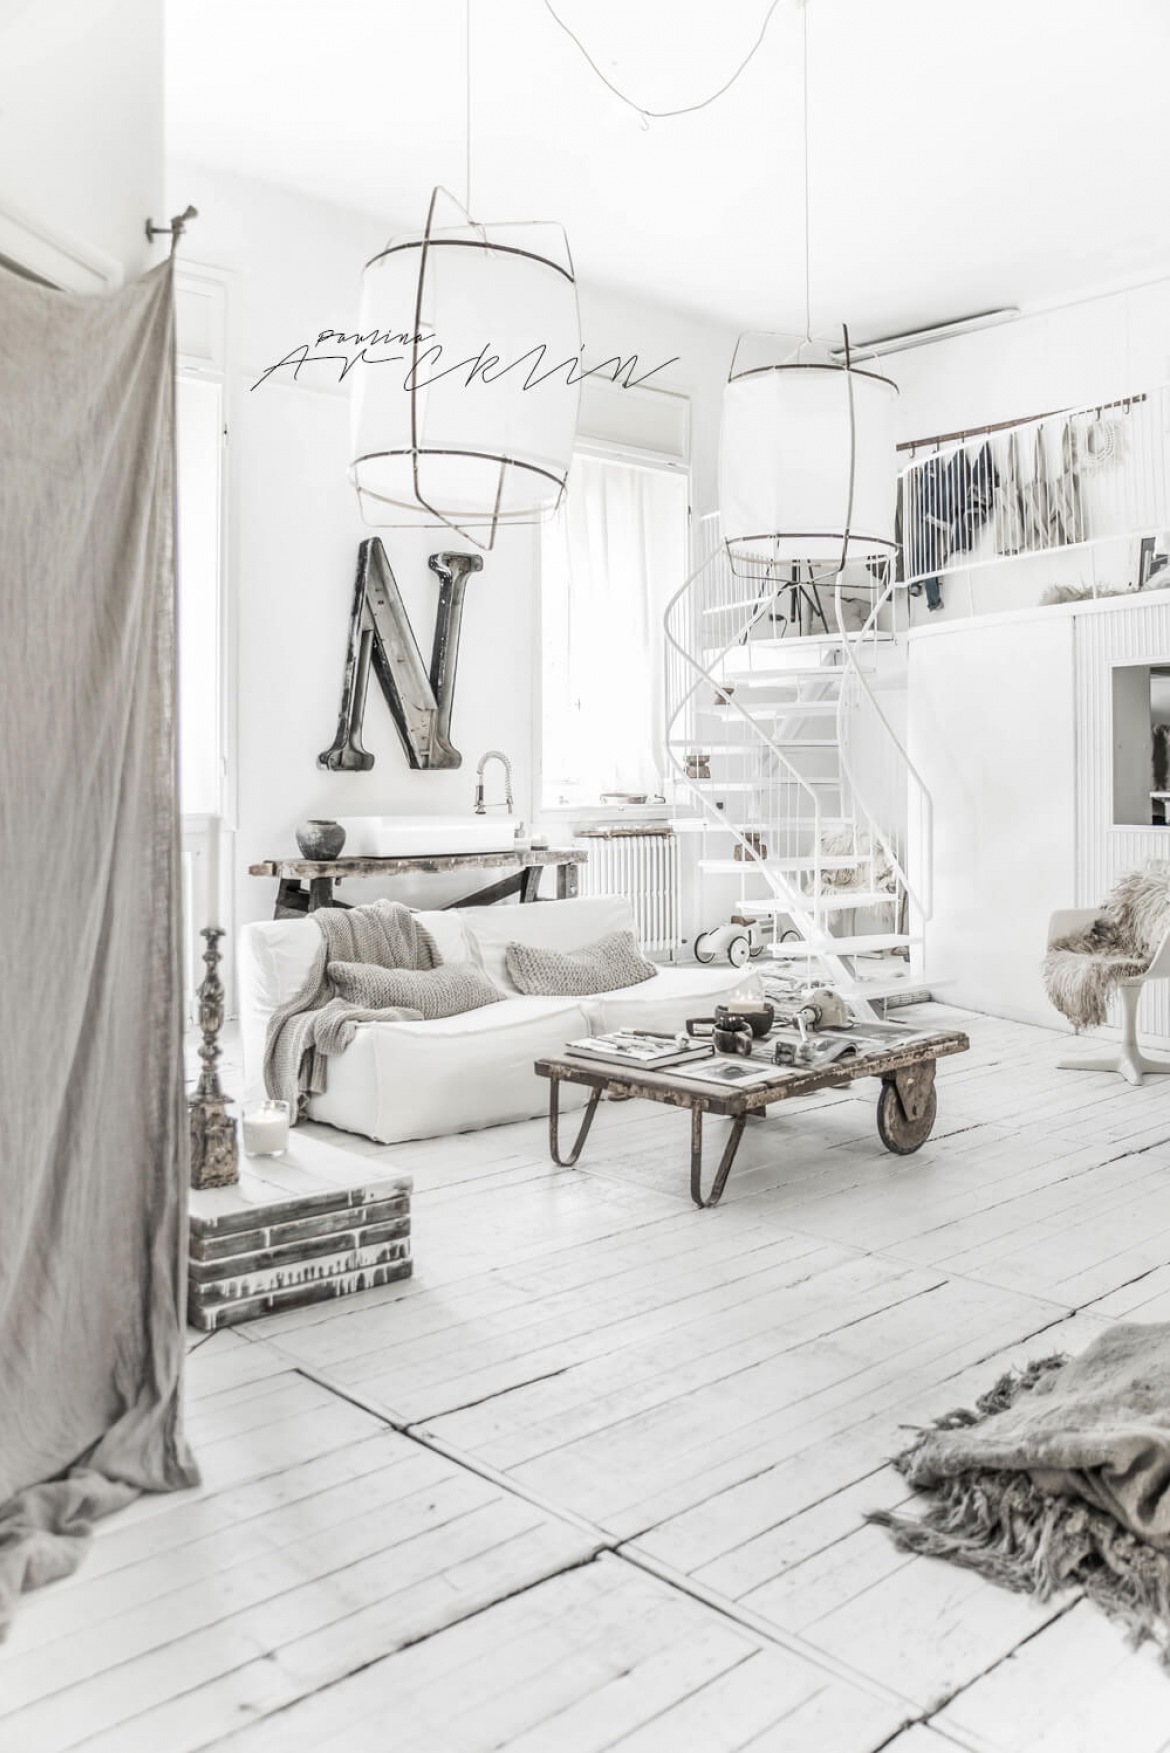 Biały przestronny salon z antresolą w skandynawskim stylu (51439)